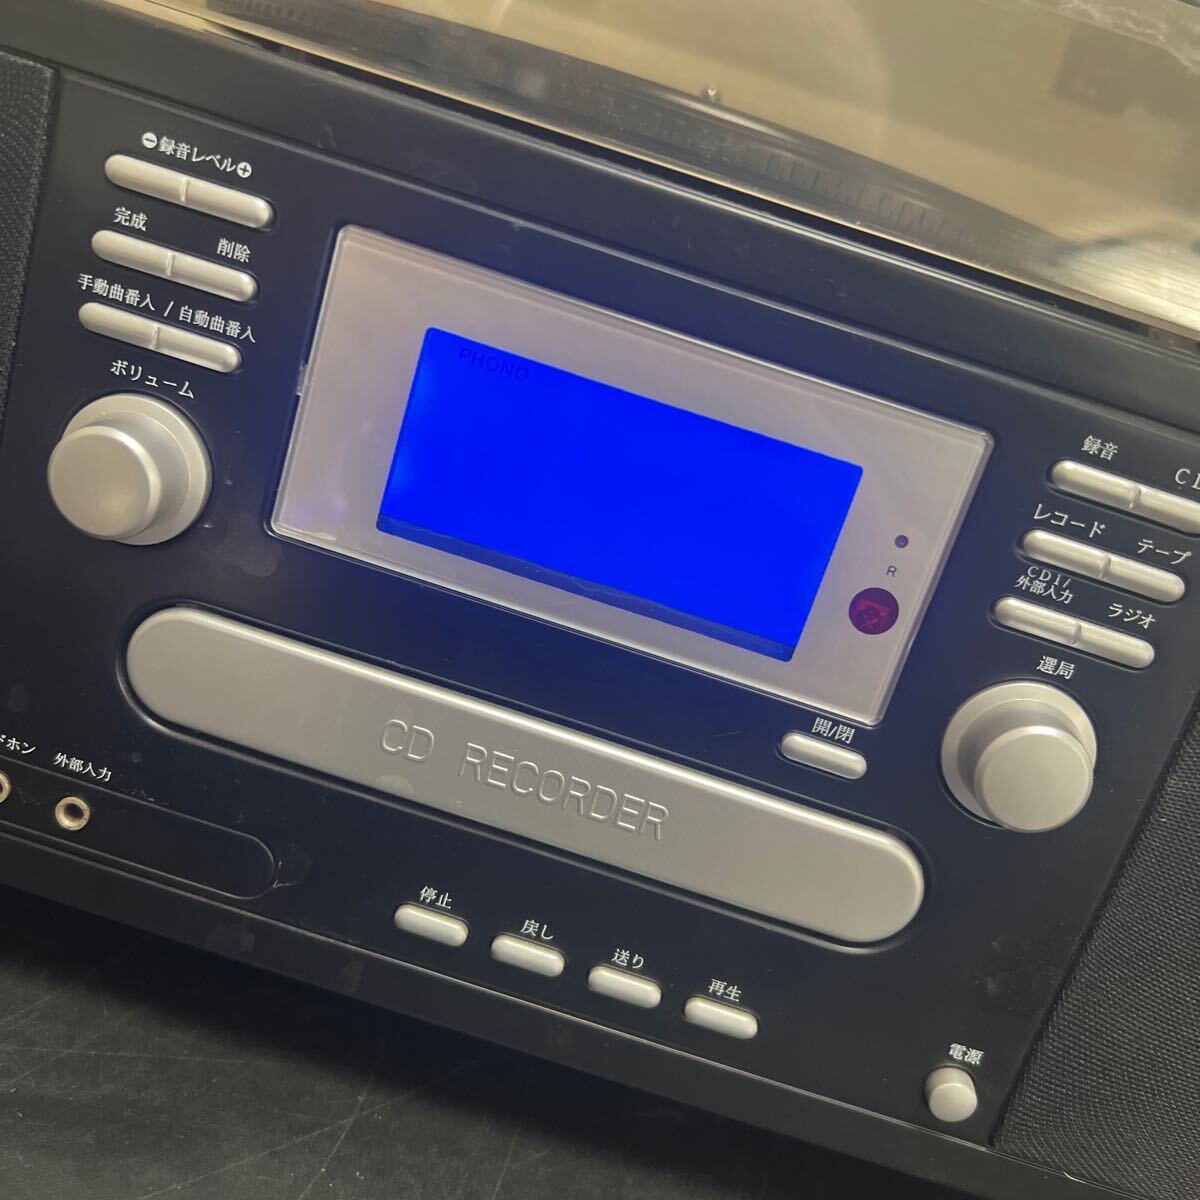 t4-20 とうしょう マルチプレーヤー 多機能レコードプレーヤー カセット CD レコード ラジオ TS-6885 中古品の画像2